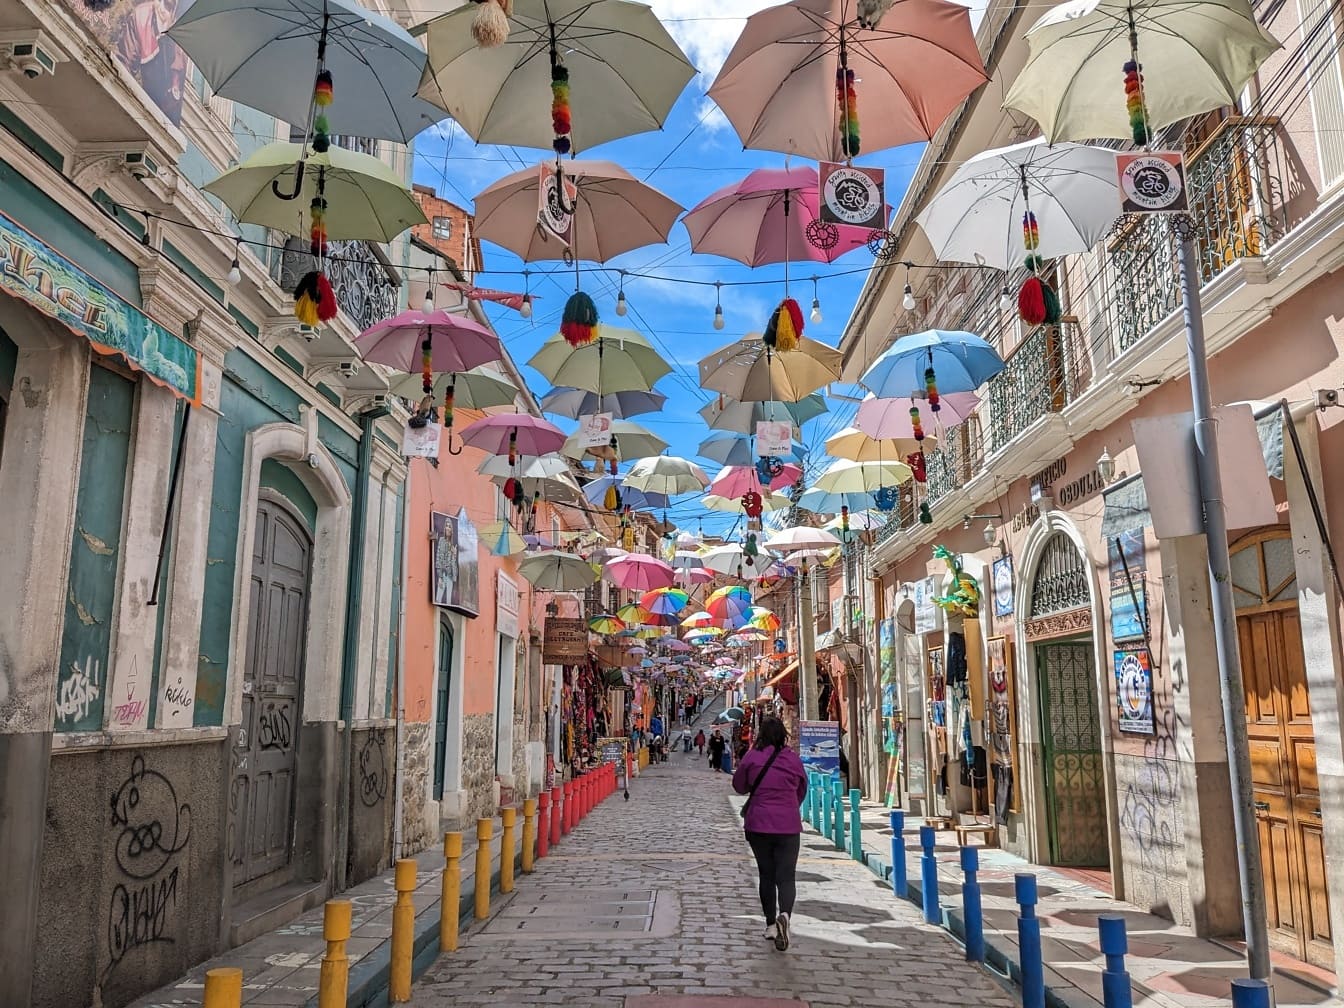 Rue avec des parapluies colorés suspendus, célèbre attraction touristique